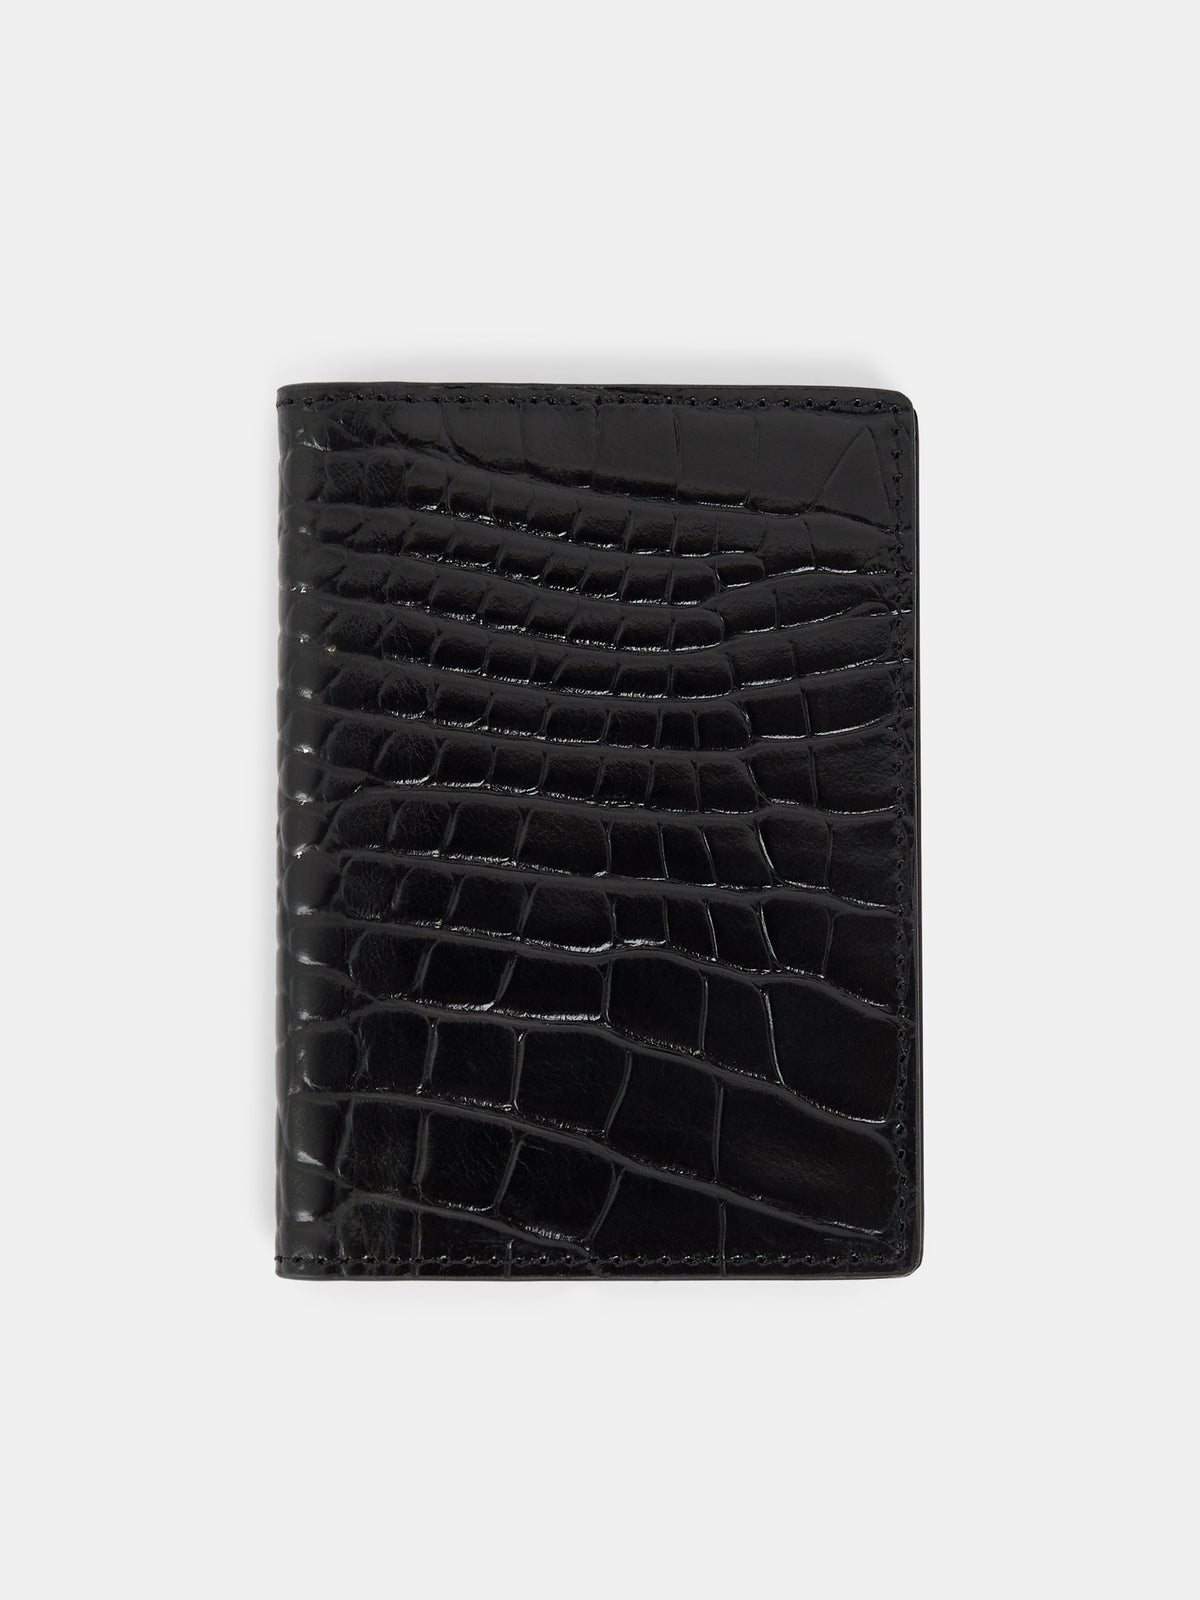 Croc Folded Card Holder / Black